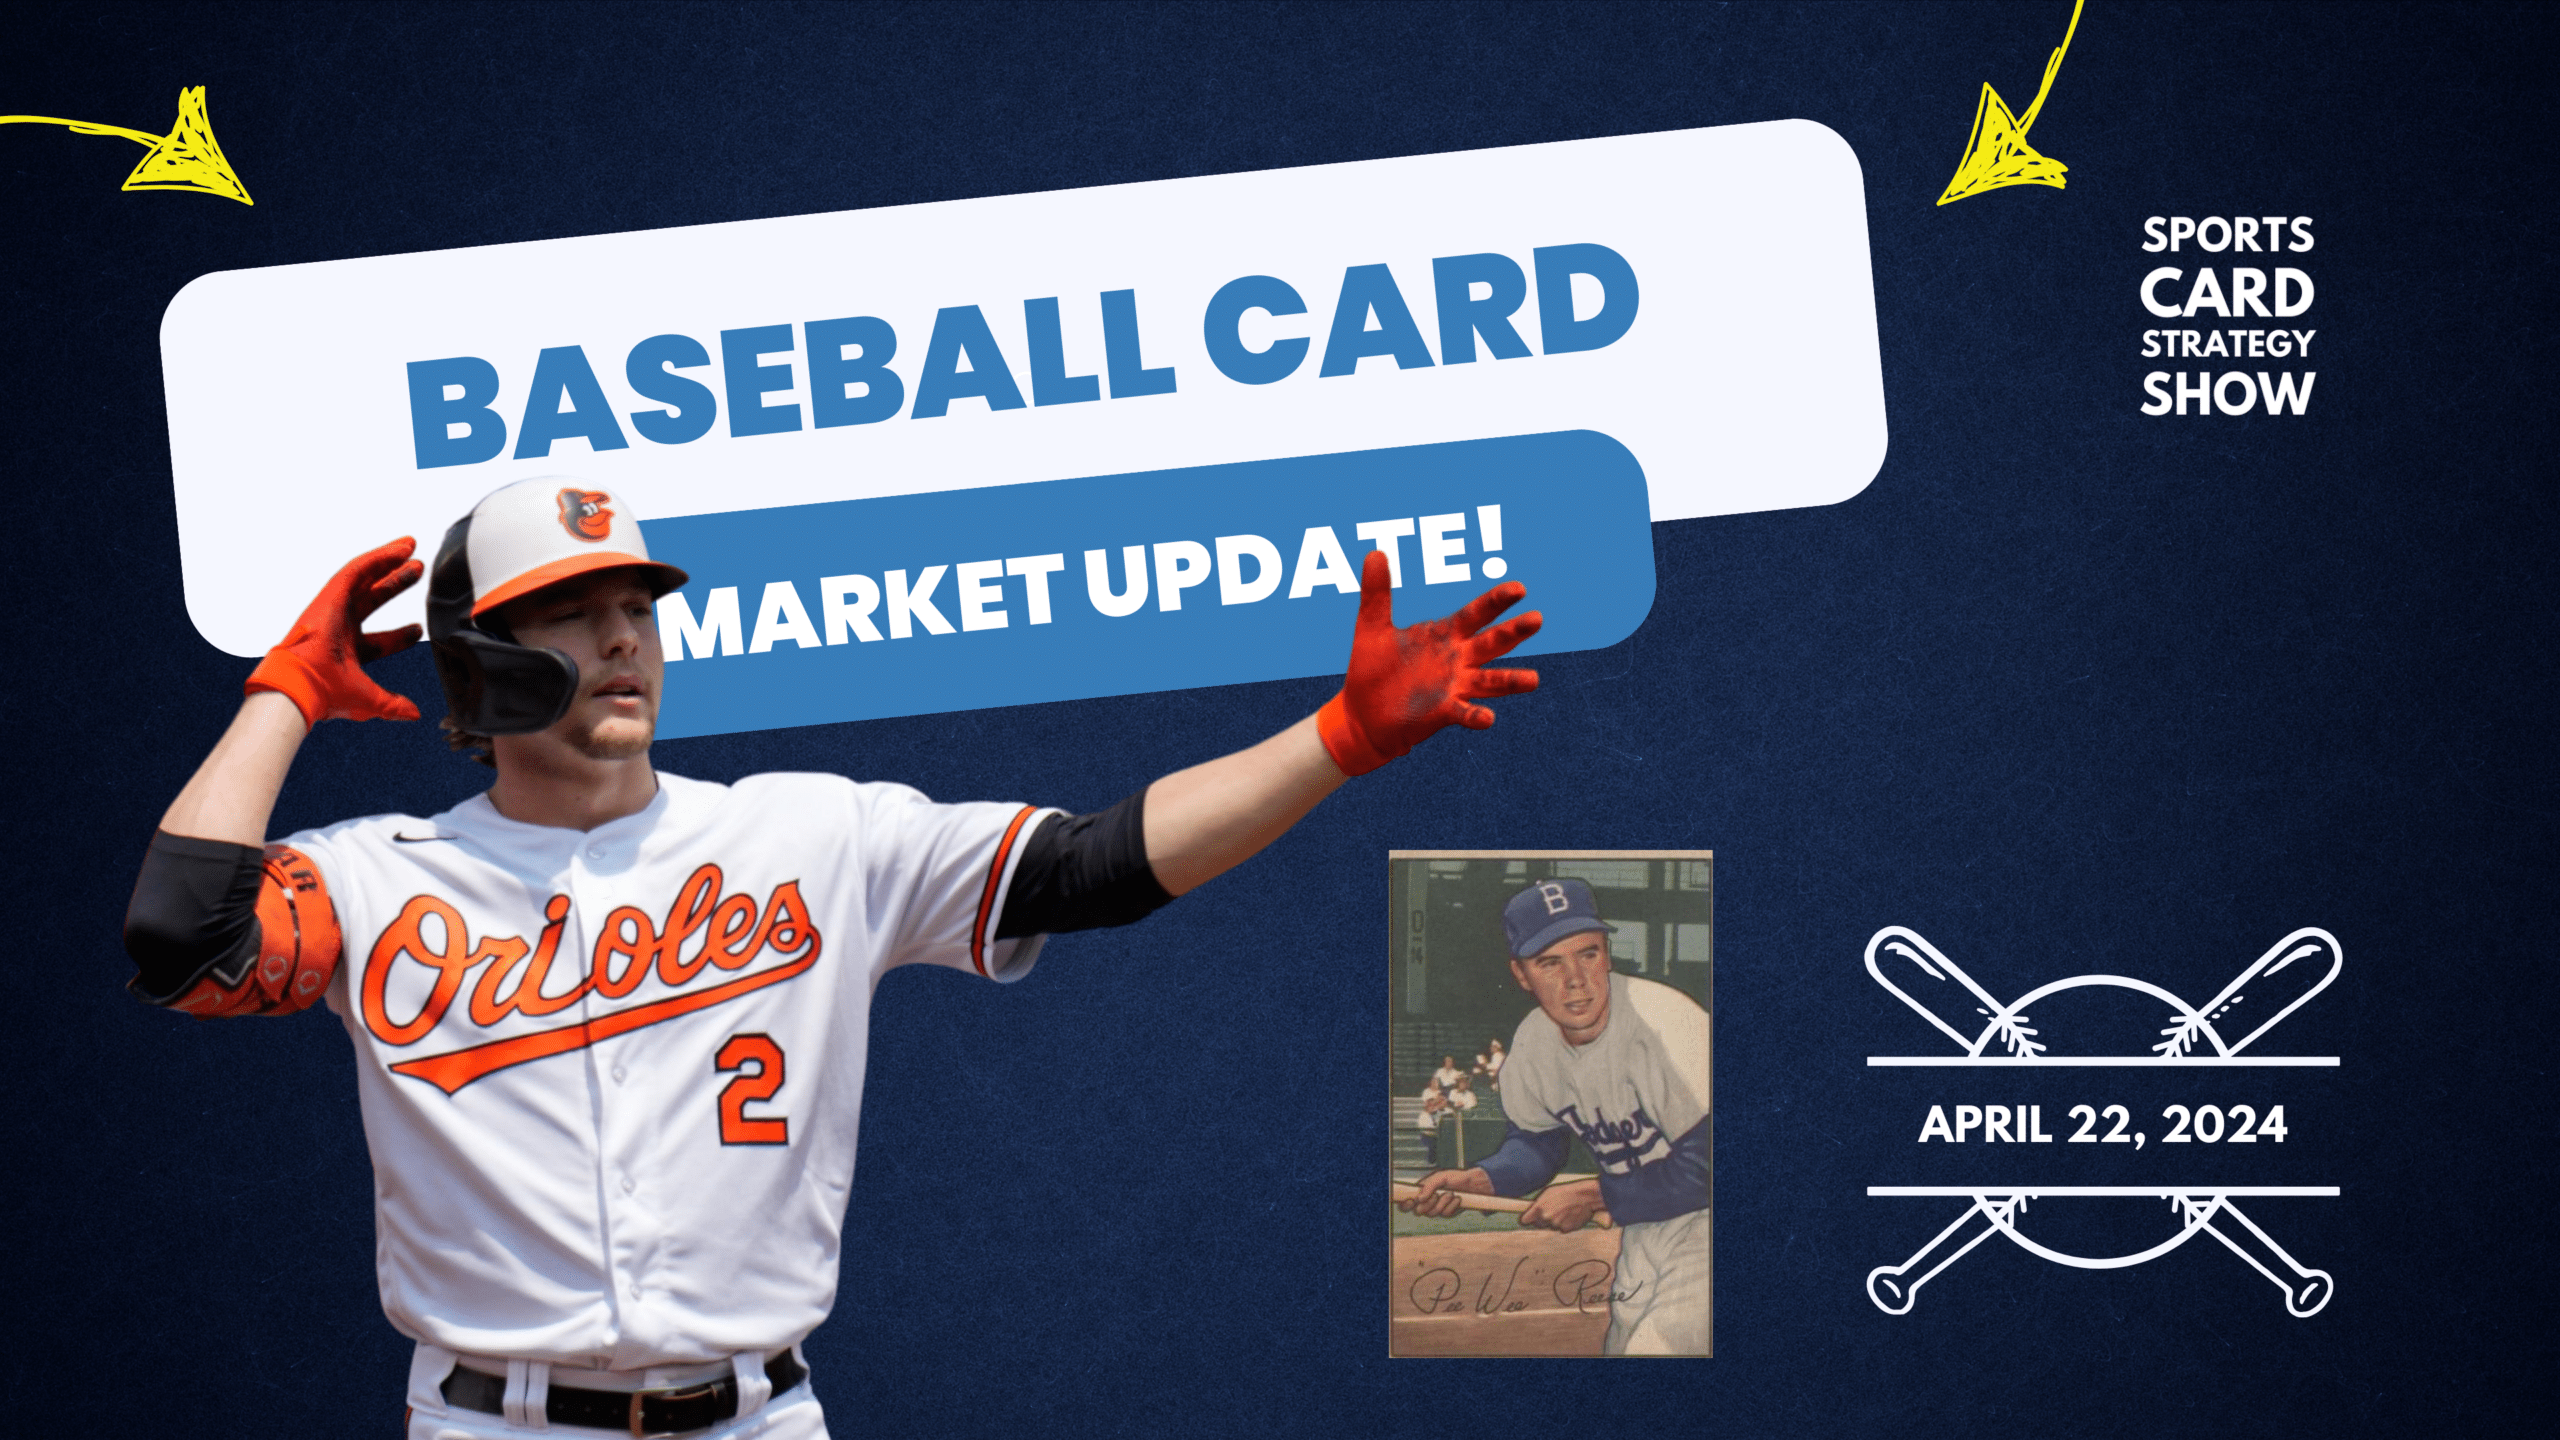 Baseball Card Market Uupdate - Monday, April 22